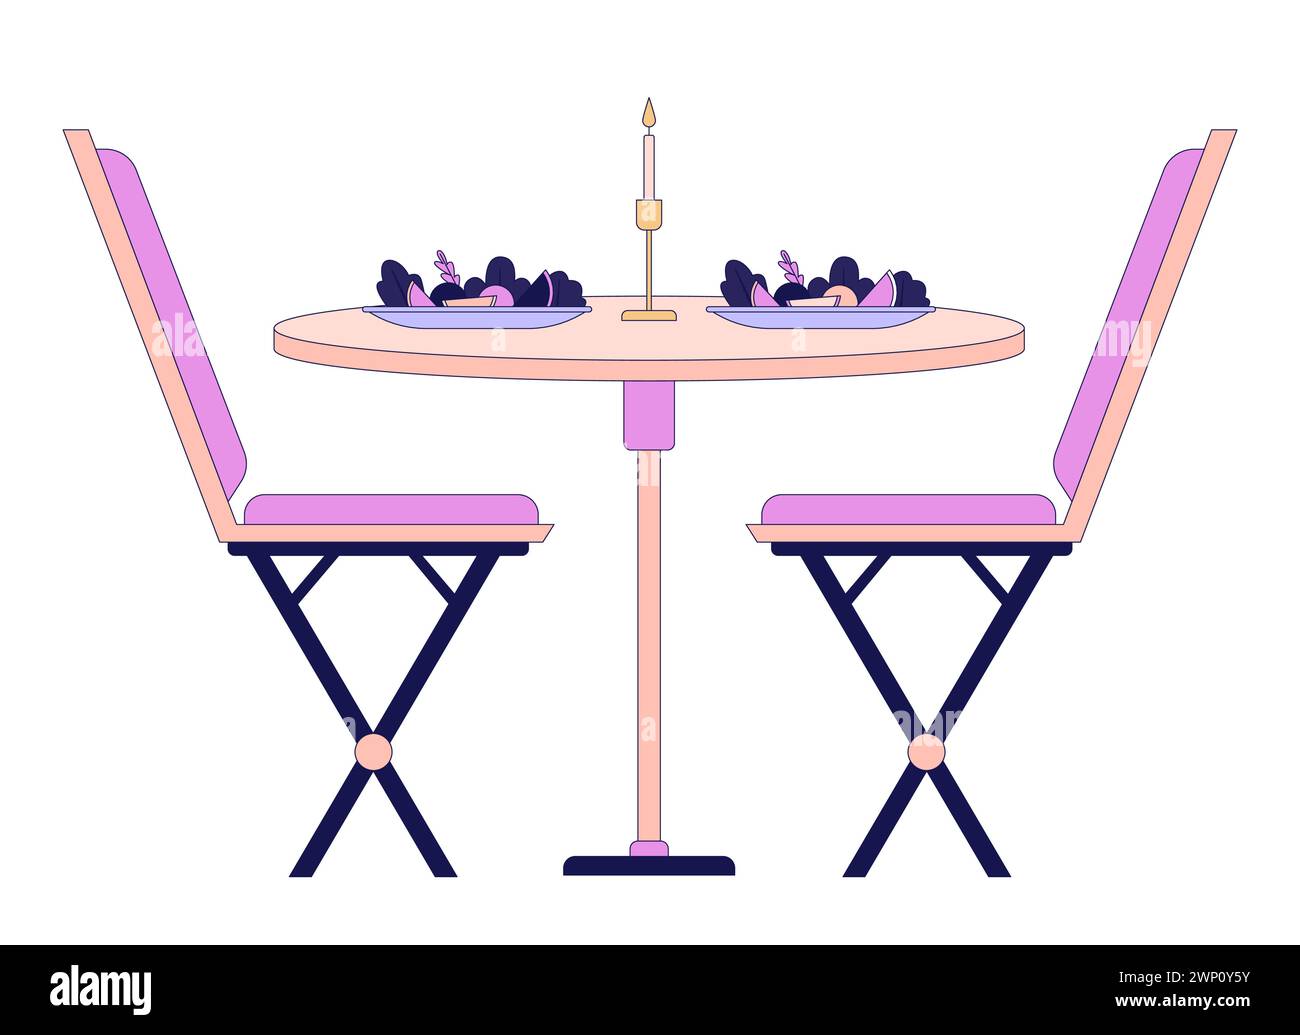 Romantische Esstisch Stühle 2D lineares Zeichentrickobjekt Stock Vektor